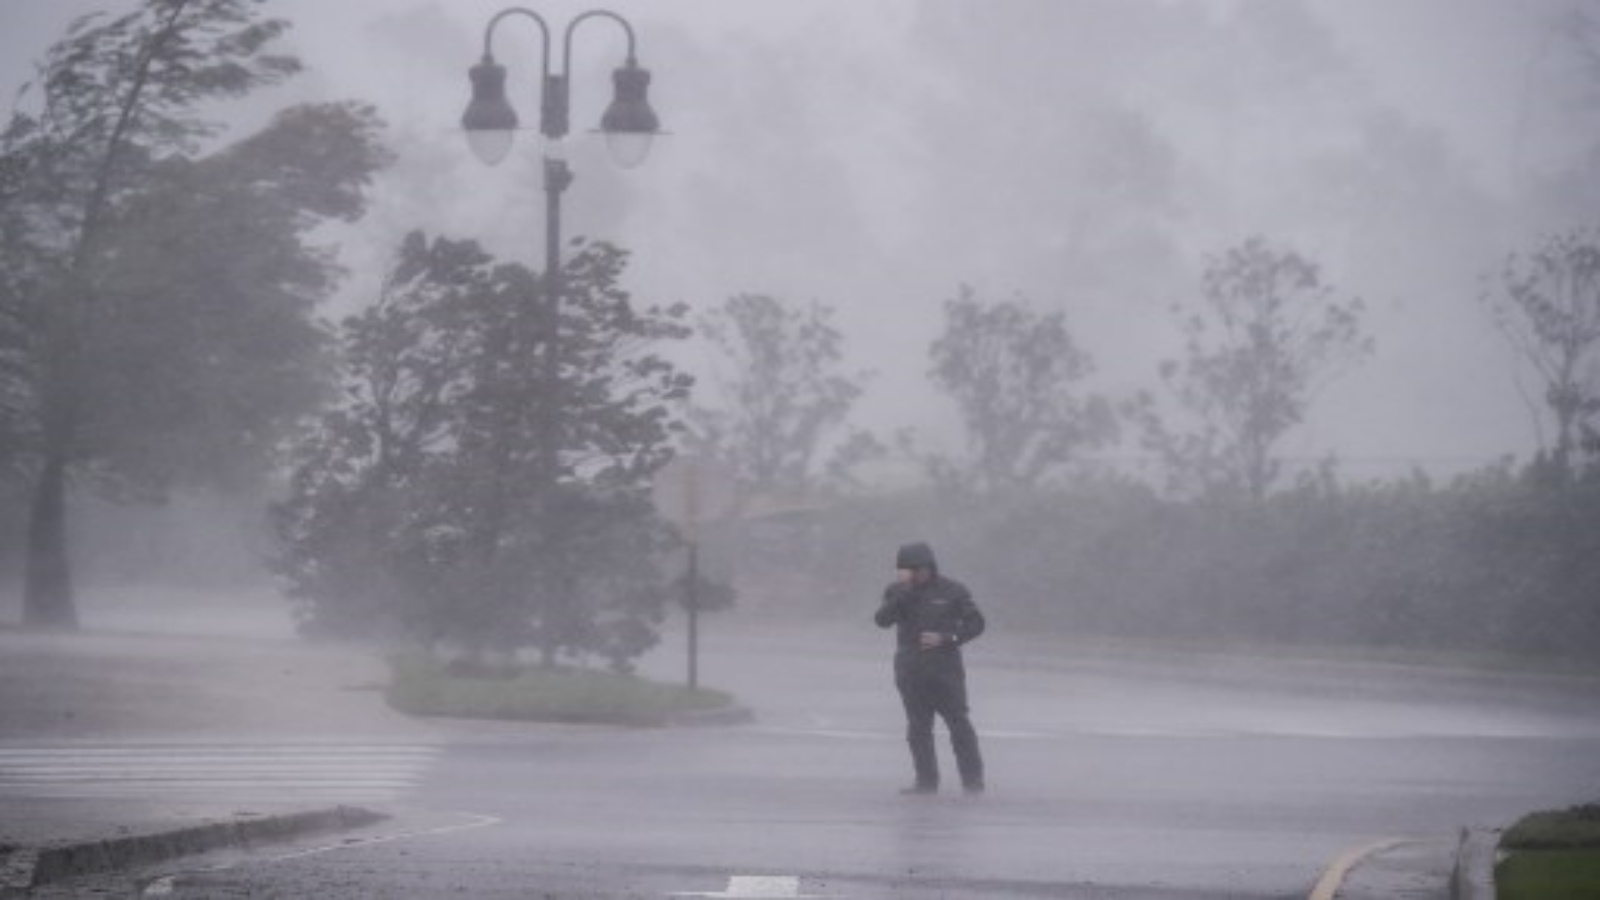 أحد المراسلين أثناء تغطيته وصول إعصار دلتا إلى بحيرة تشارلز ، لويزيانا في 9 أكتوبر 2020